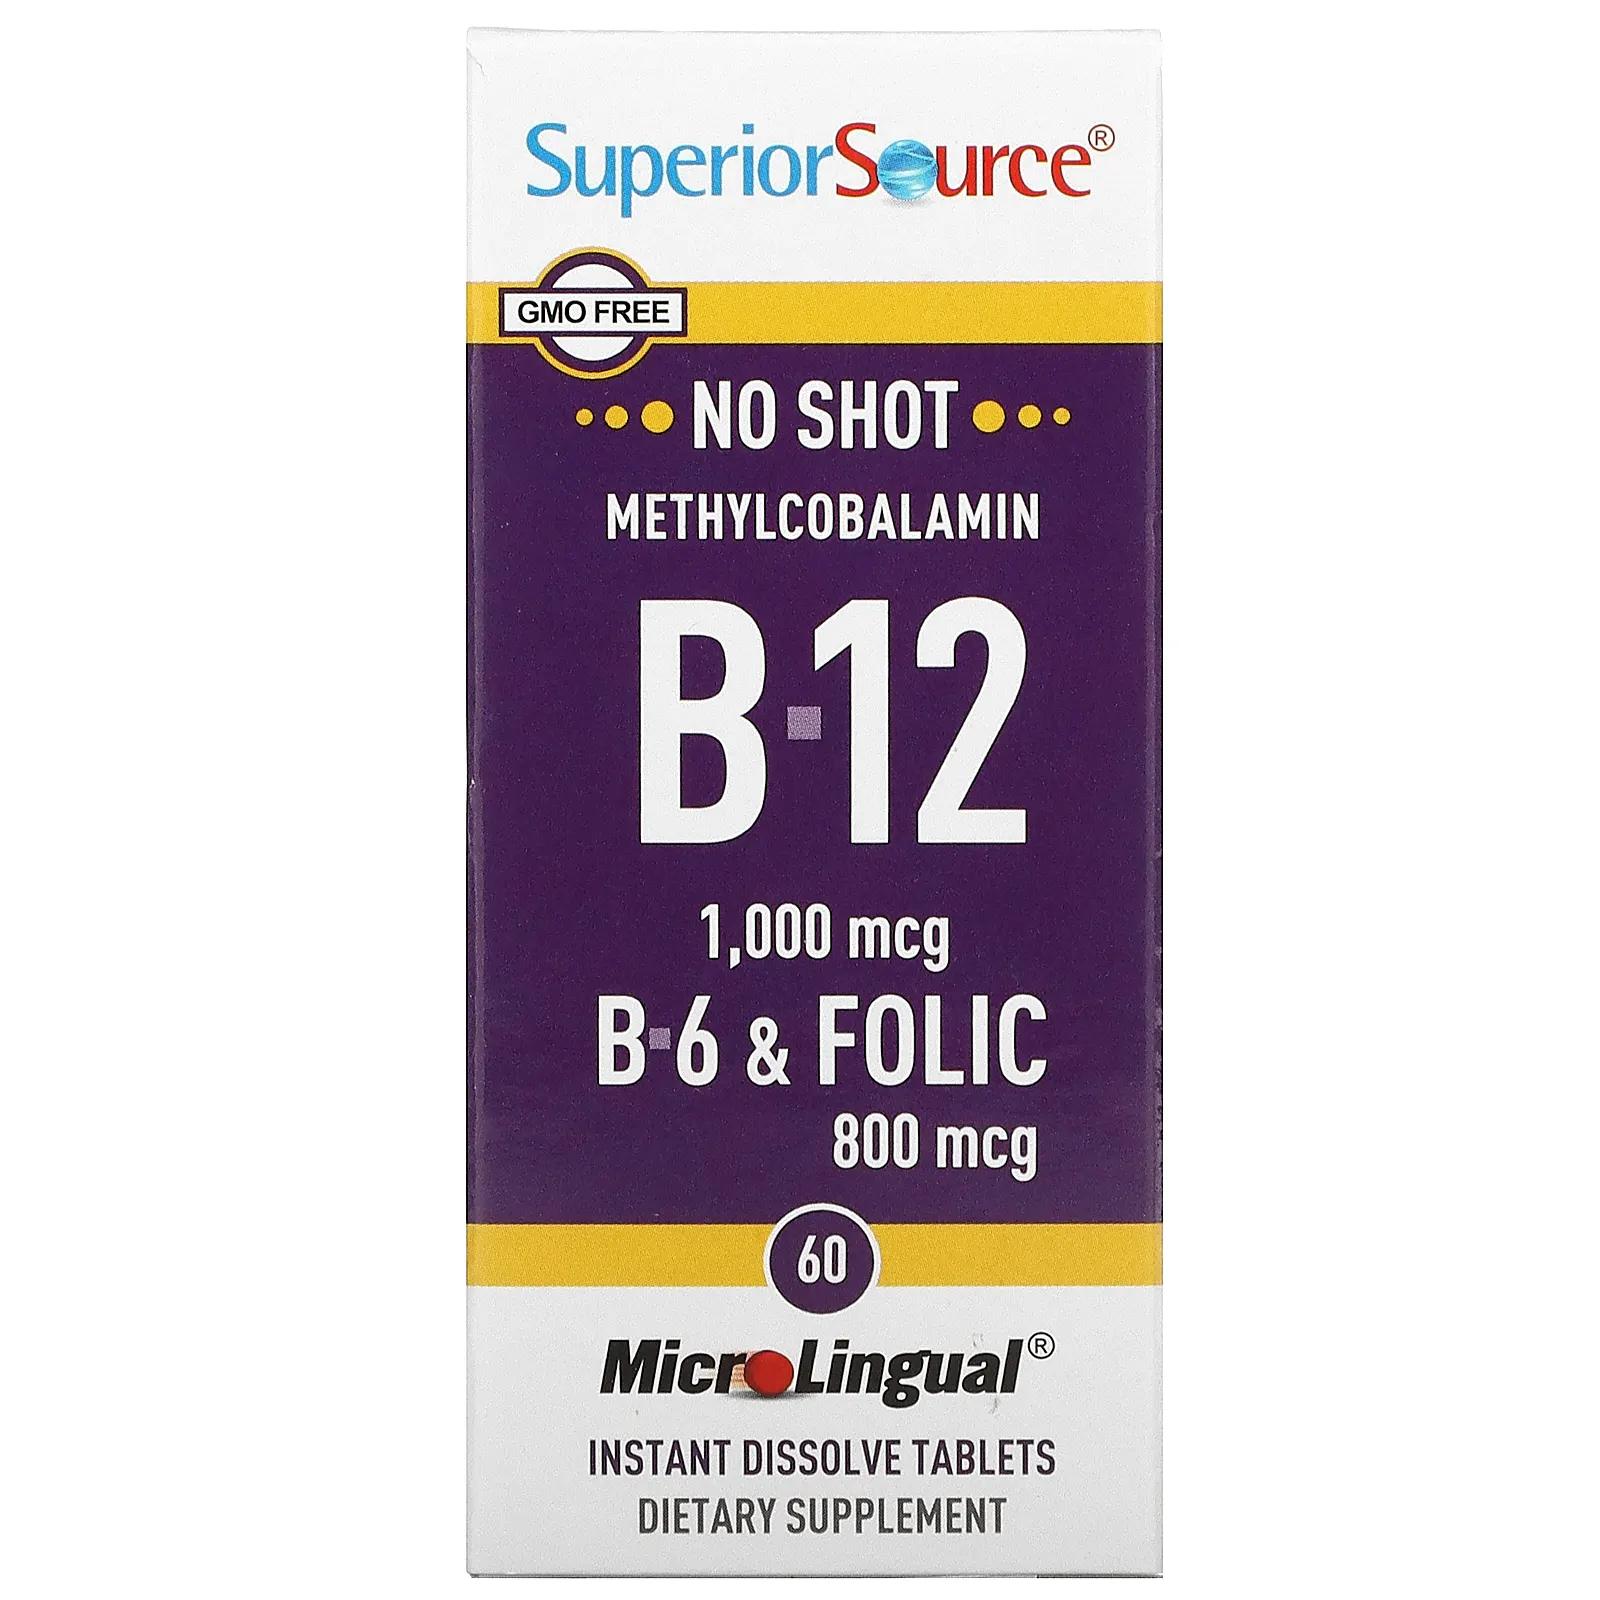 Superior Source Метилкобаламин B-12 1000 мкг B-6 и фолиевая кислота 800 мкг MicroLingual 60 таблеток цианокобаламин b 12 superior source 1000 мкг 100 таблеток